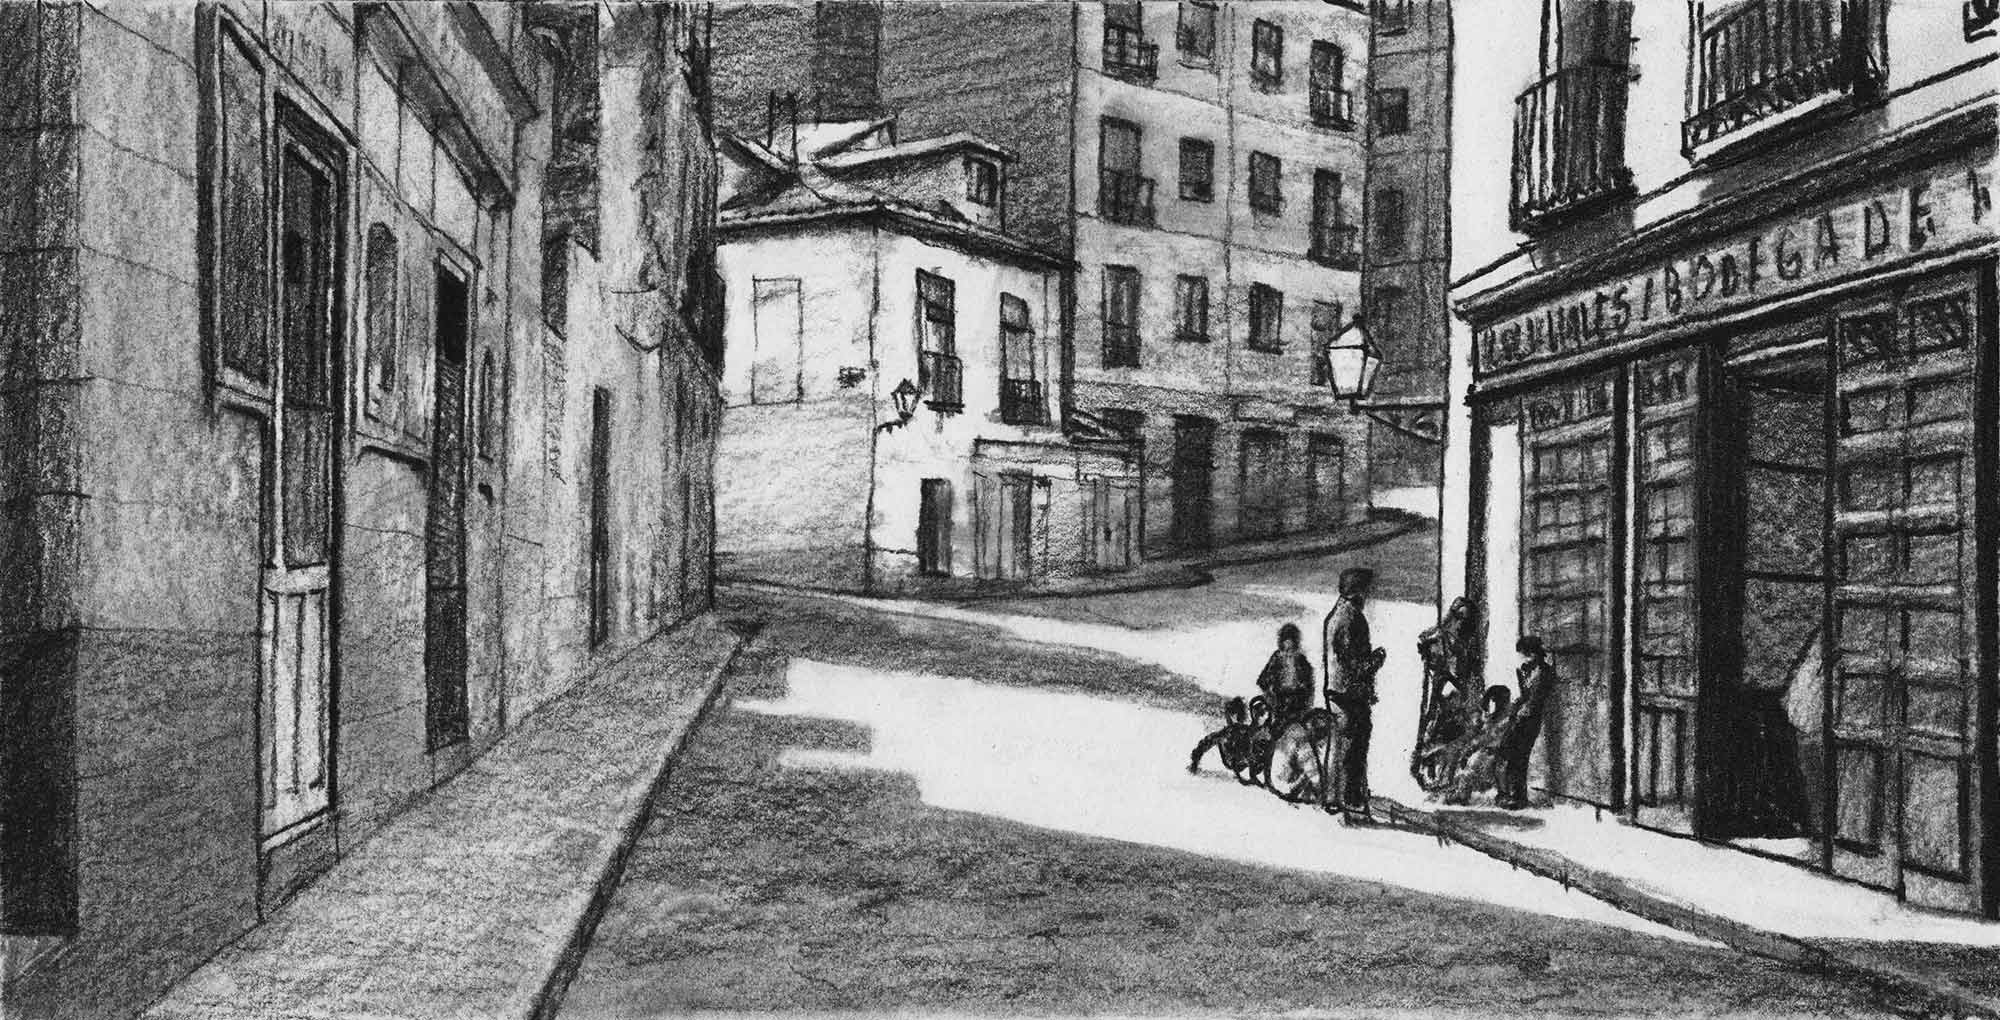 Calle de la Morería (Otto Wünderlich, 1940-45). Charcoal on paper, by Mario Jodra.